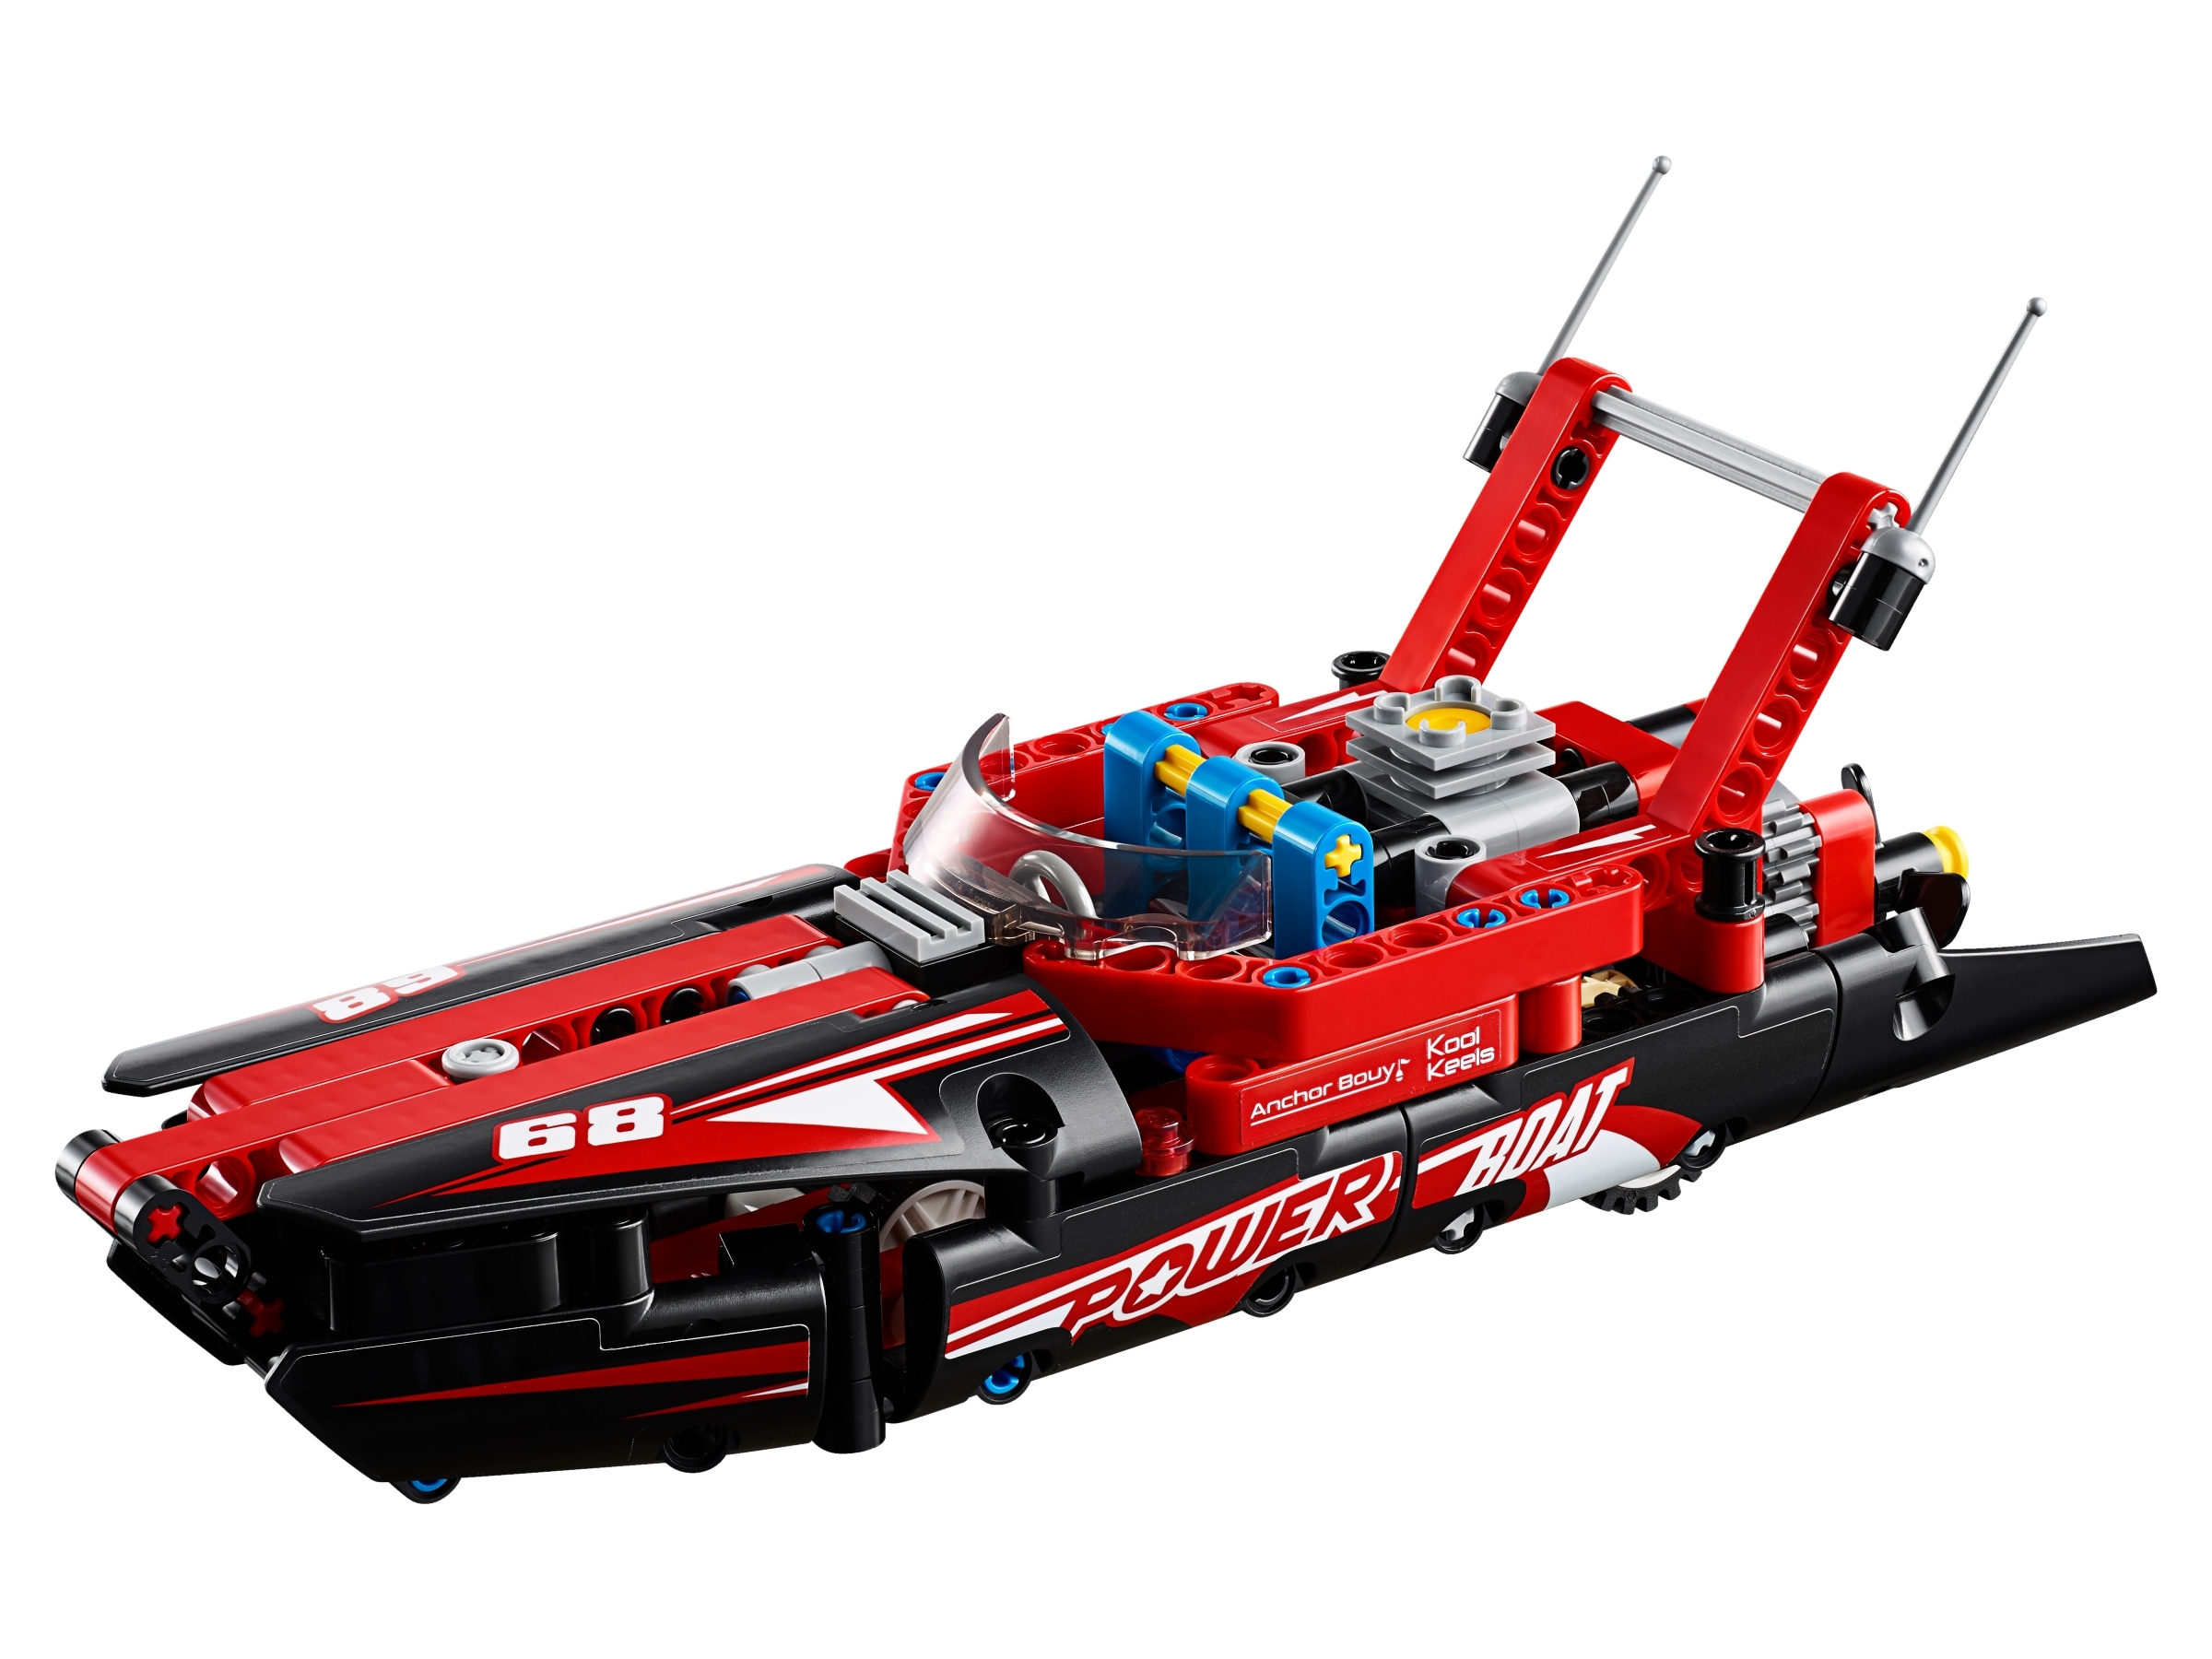 Fæstning gør ikke peeling Power Boat 42089 | Technic™ | Buy online at the Official LEGO® Shop US